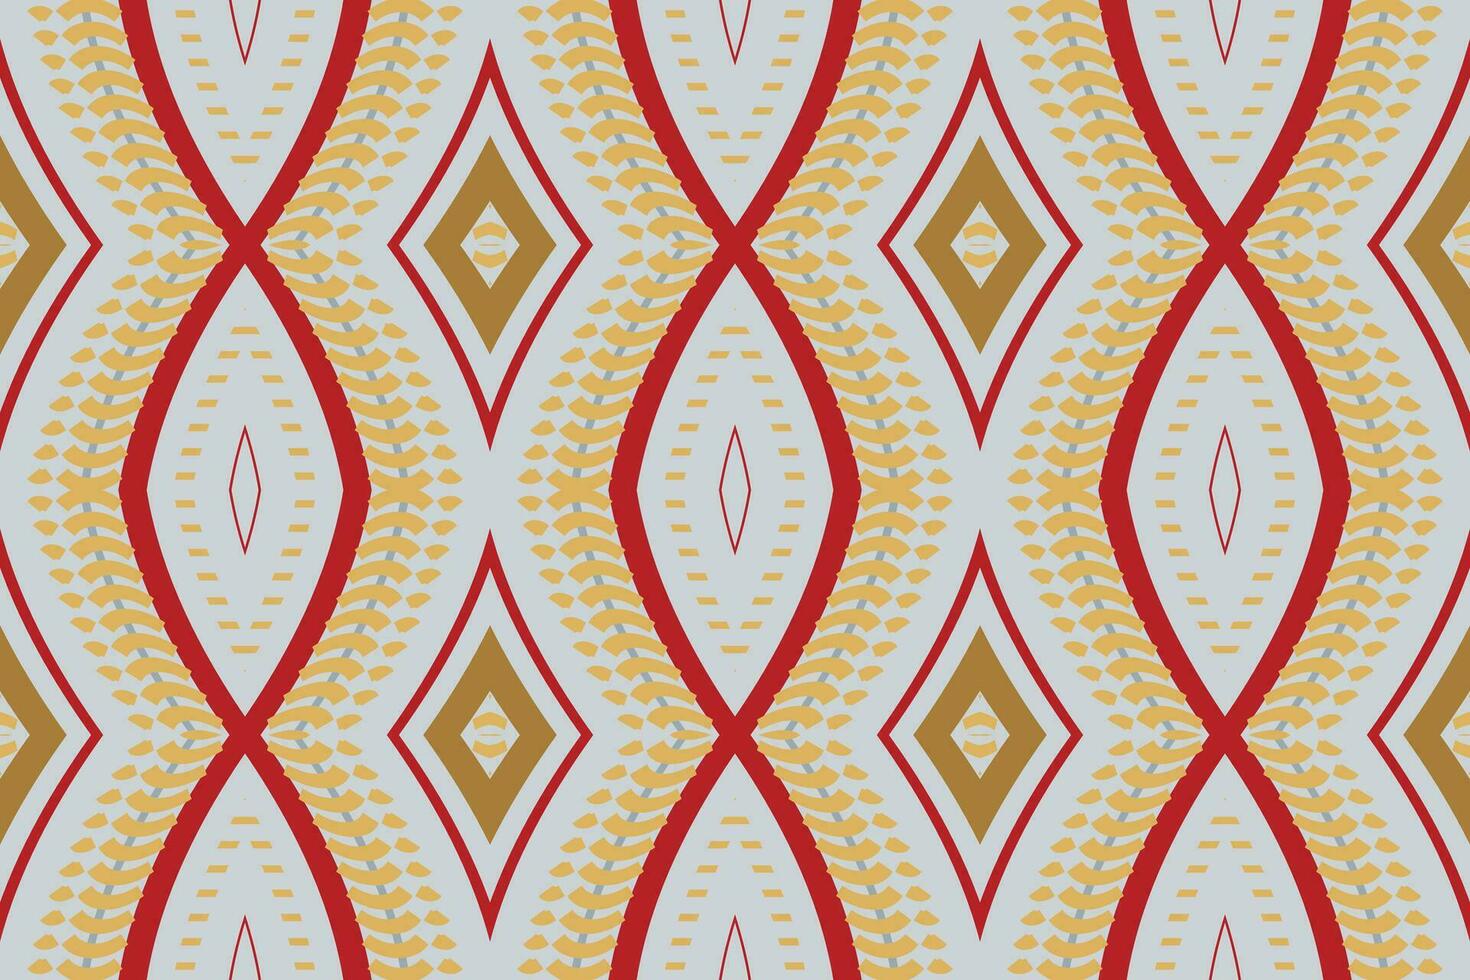 ikat blommig paisley broderi bakgrund. ikat blomma geometrisk etnisk orientalisk mönster traditionell.aztec stil abstrakt vektor illustration.design för textur, tyg, kläder, inslagning, sarong.